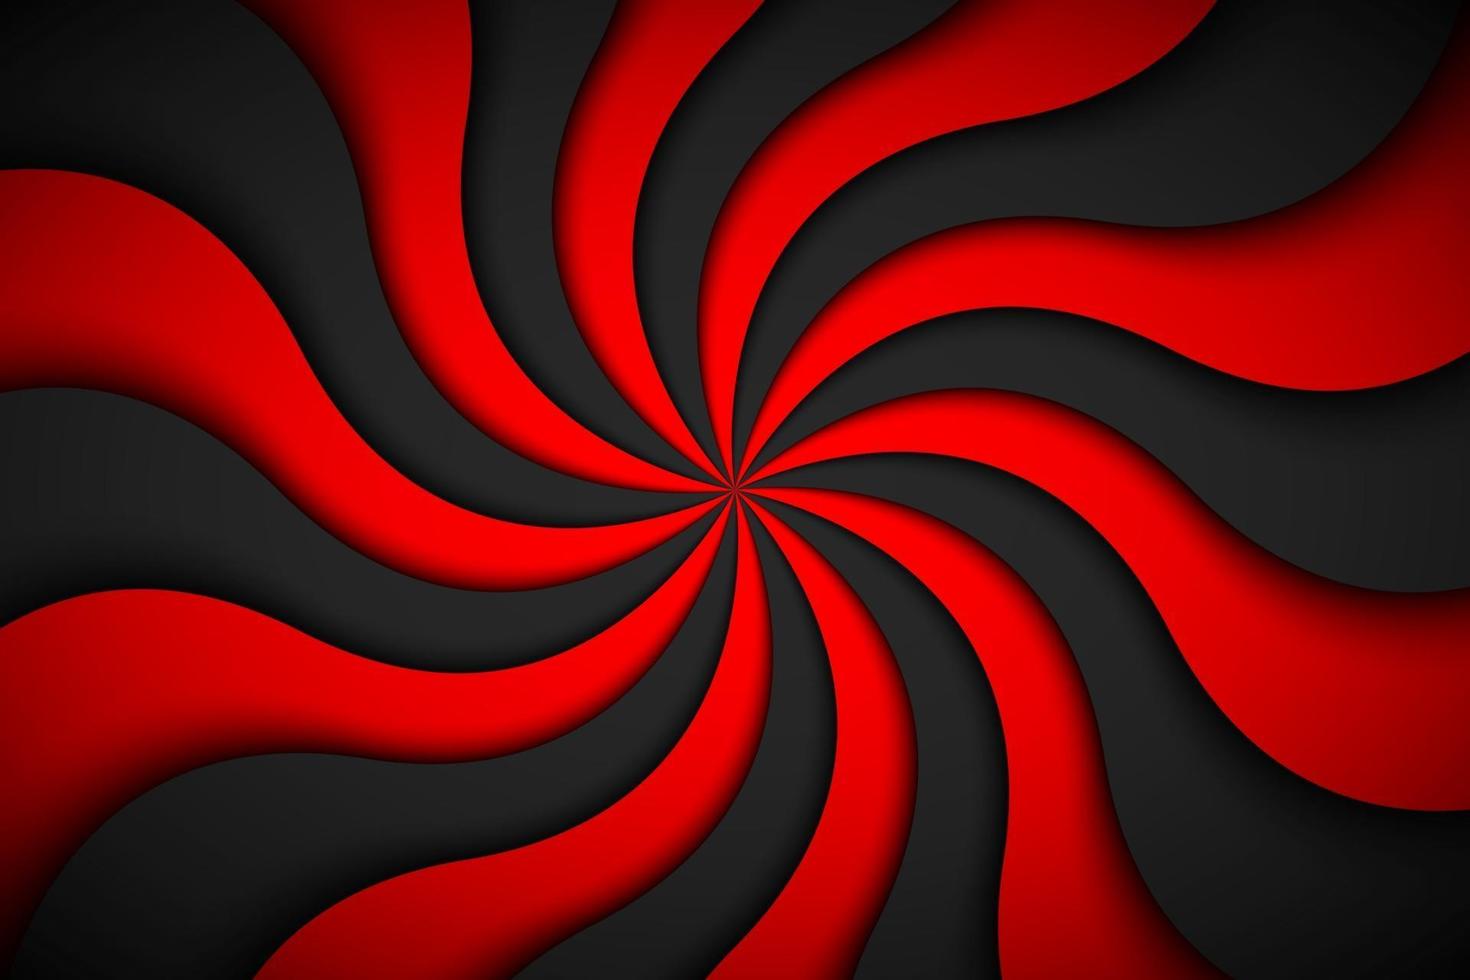 dekorativ modern röd spiralbakgrund. virvlande radiellt mönster. enkel abstrakt vektorillustration vektor